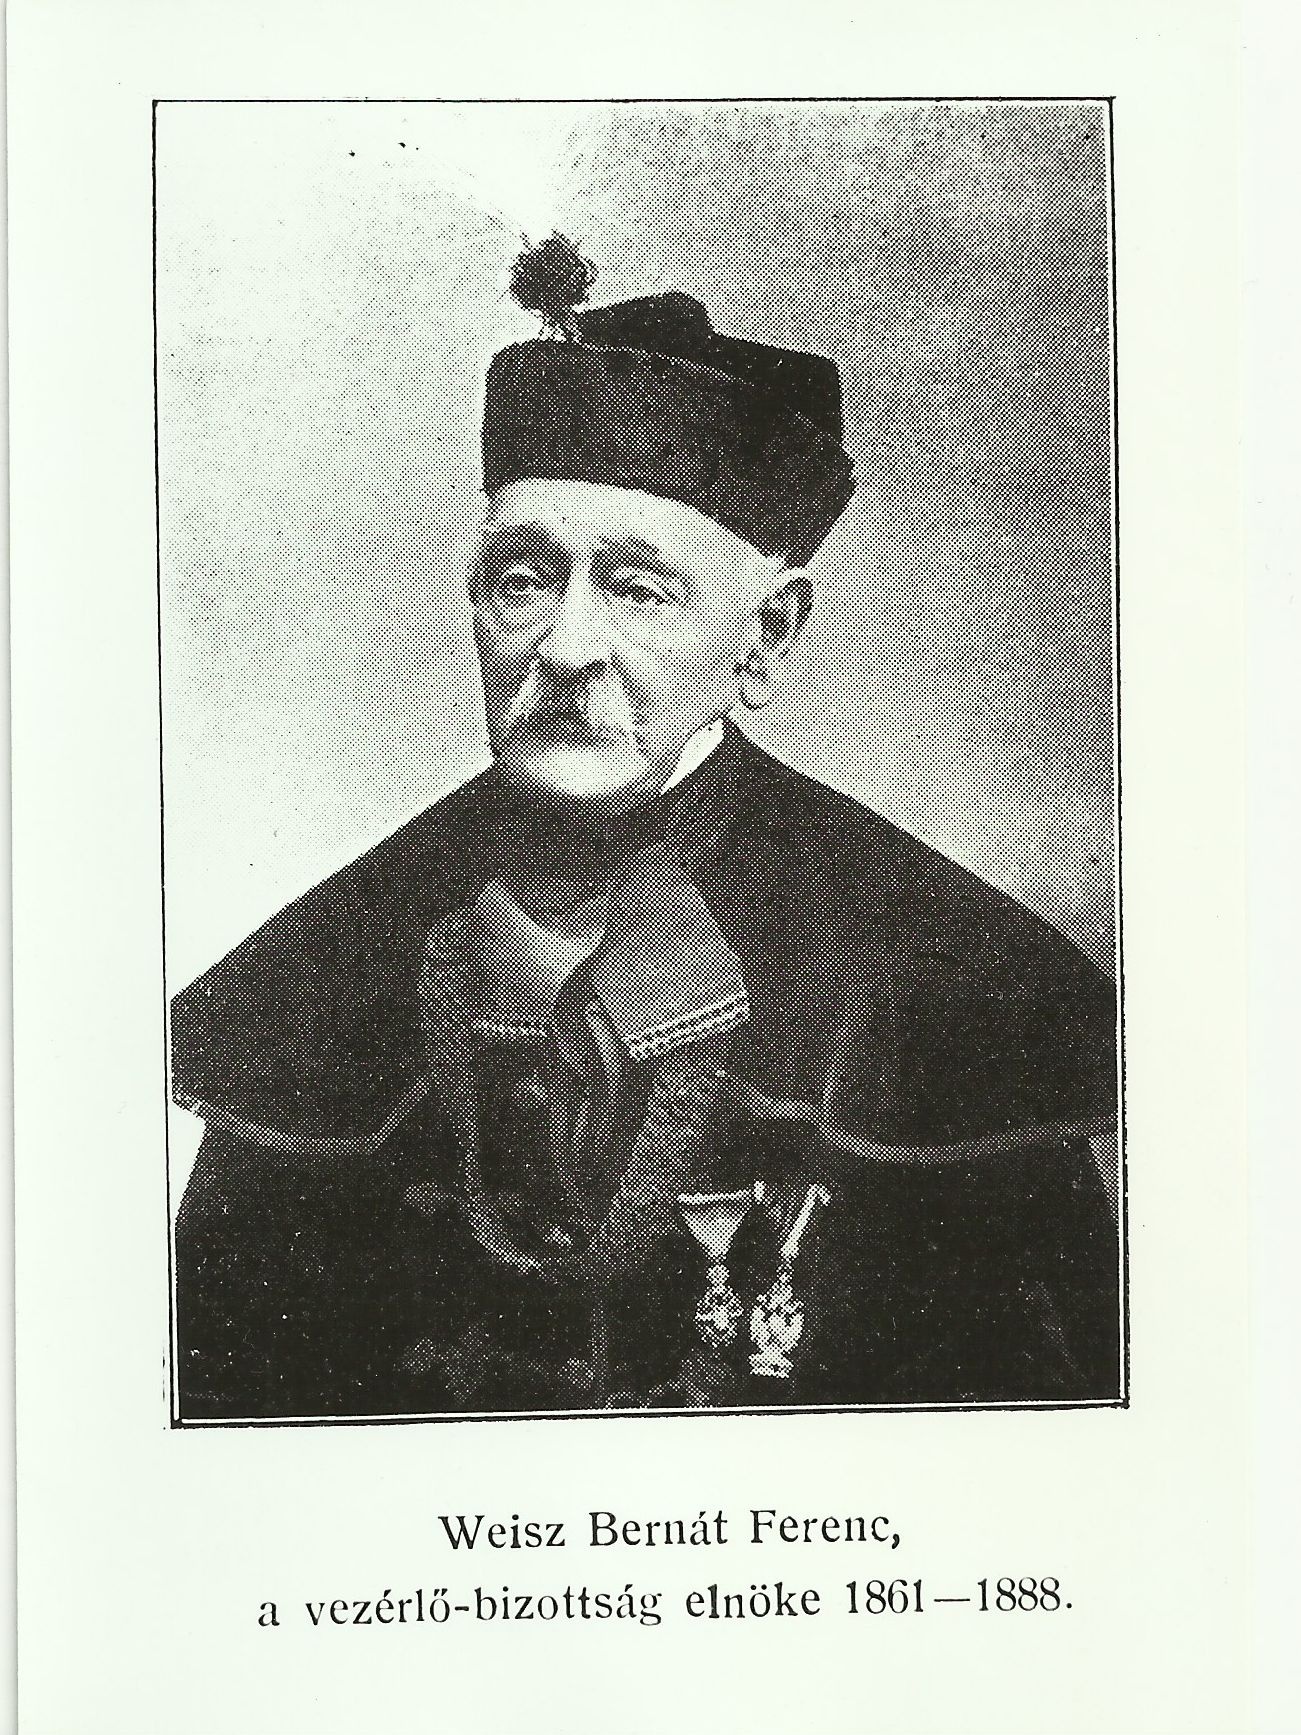 Weisz Bernát Ferenc a vezérlő-bizottság elnöke 1861-1888. (Magyar Kereskedelmi és Vendéglátóipari Múzeum CC BY-NC-ND)